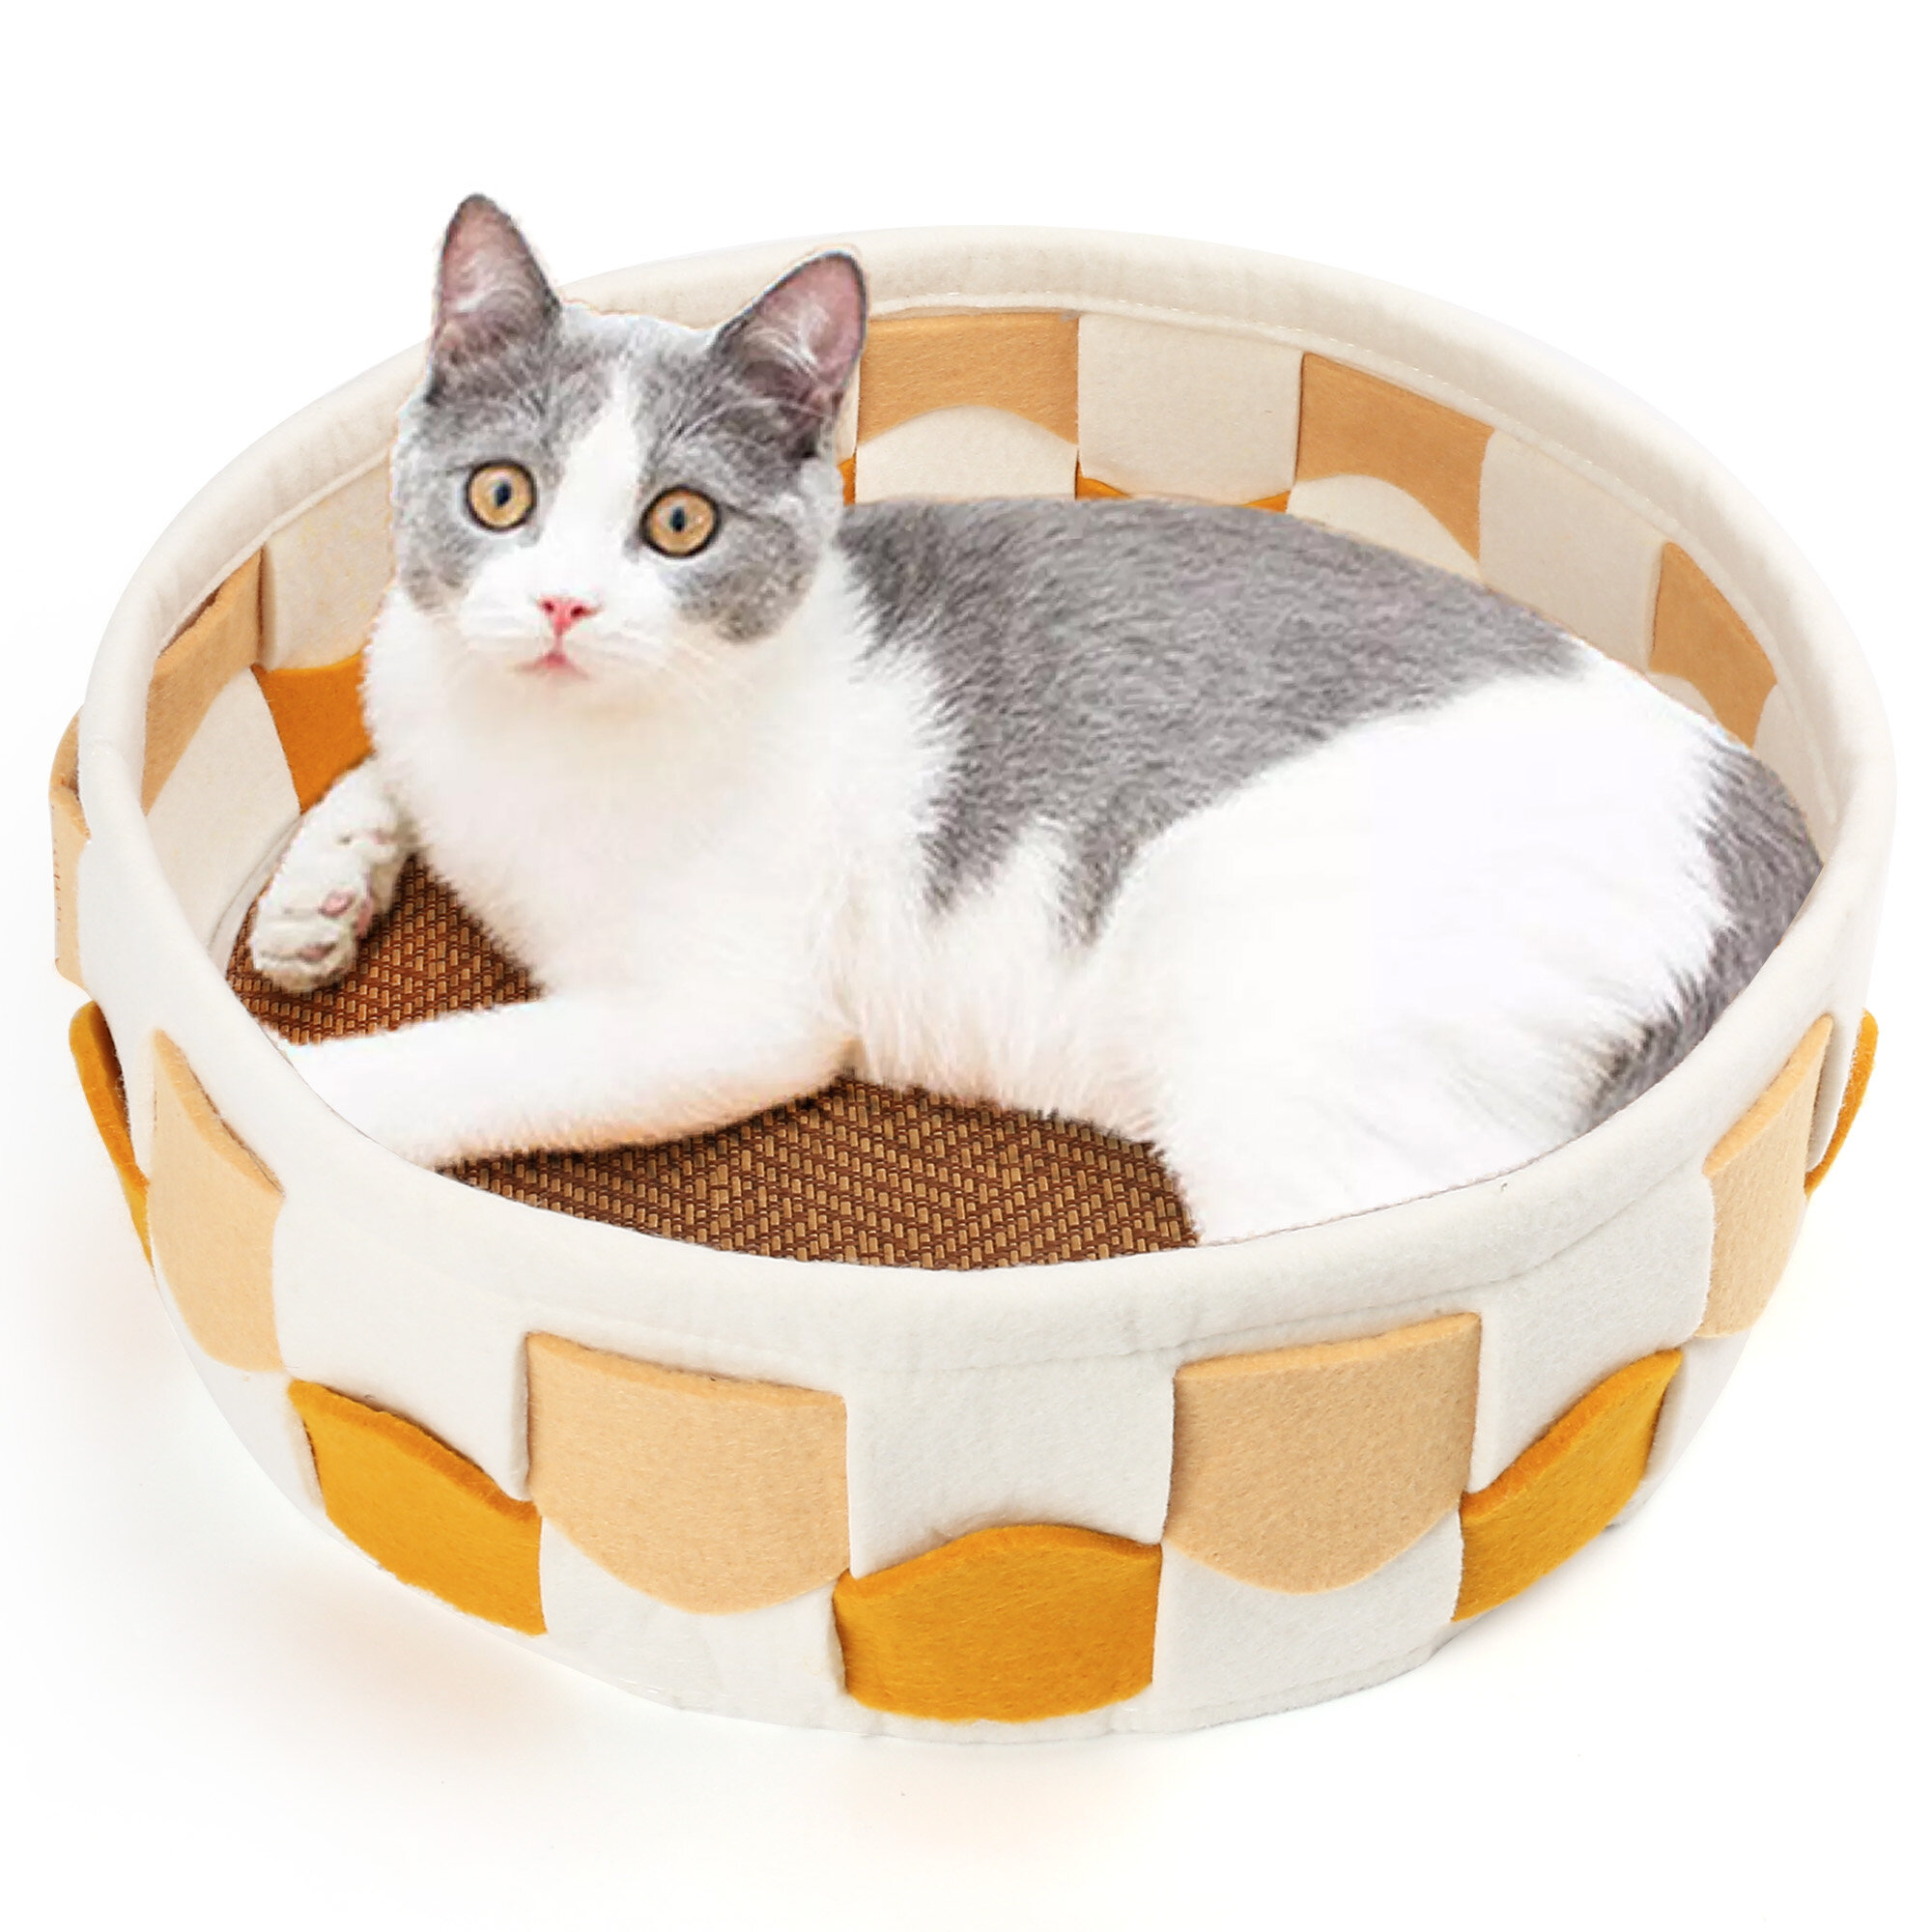 Small Round Cat. Cat Indoor. Cat Pudding игрушка вилдберис. Round cat